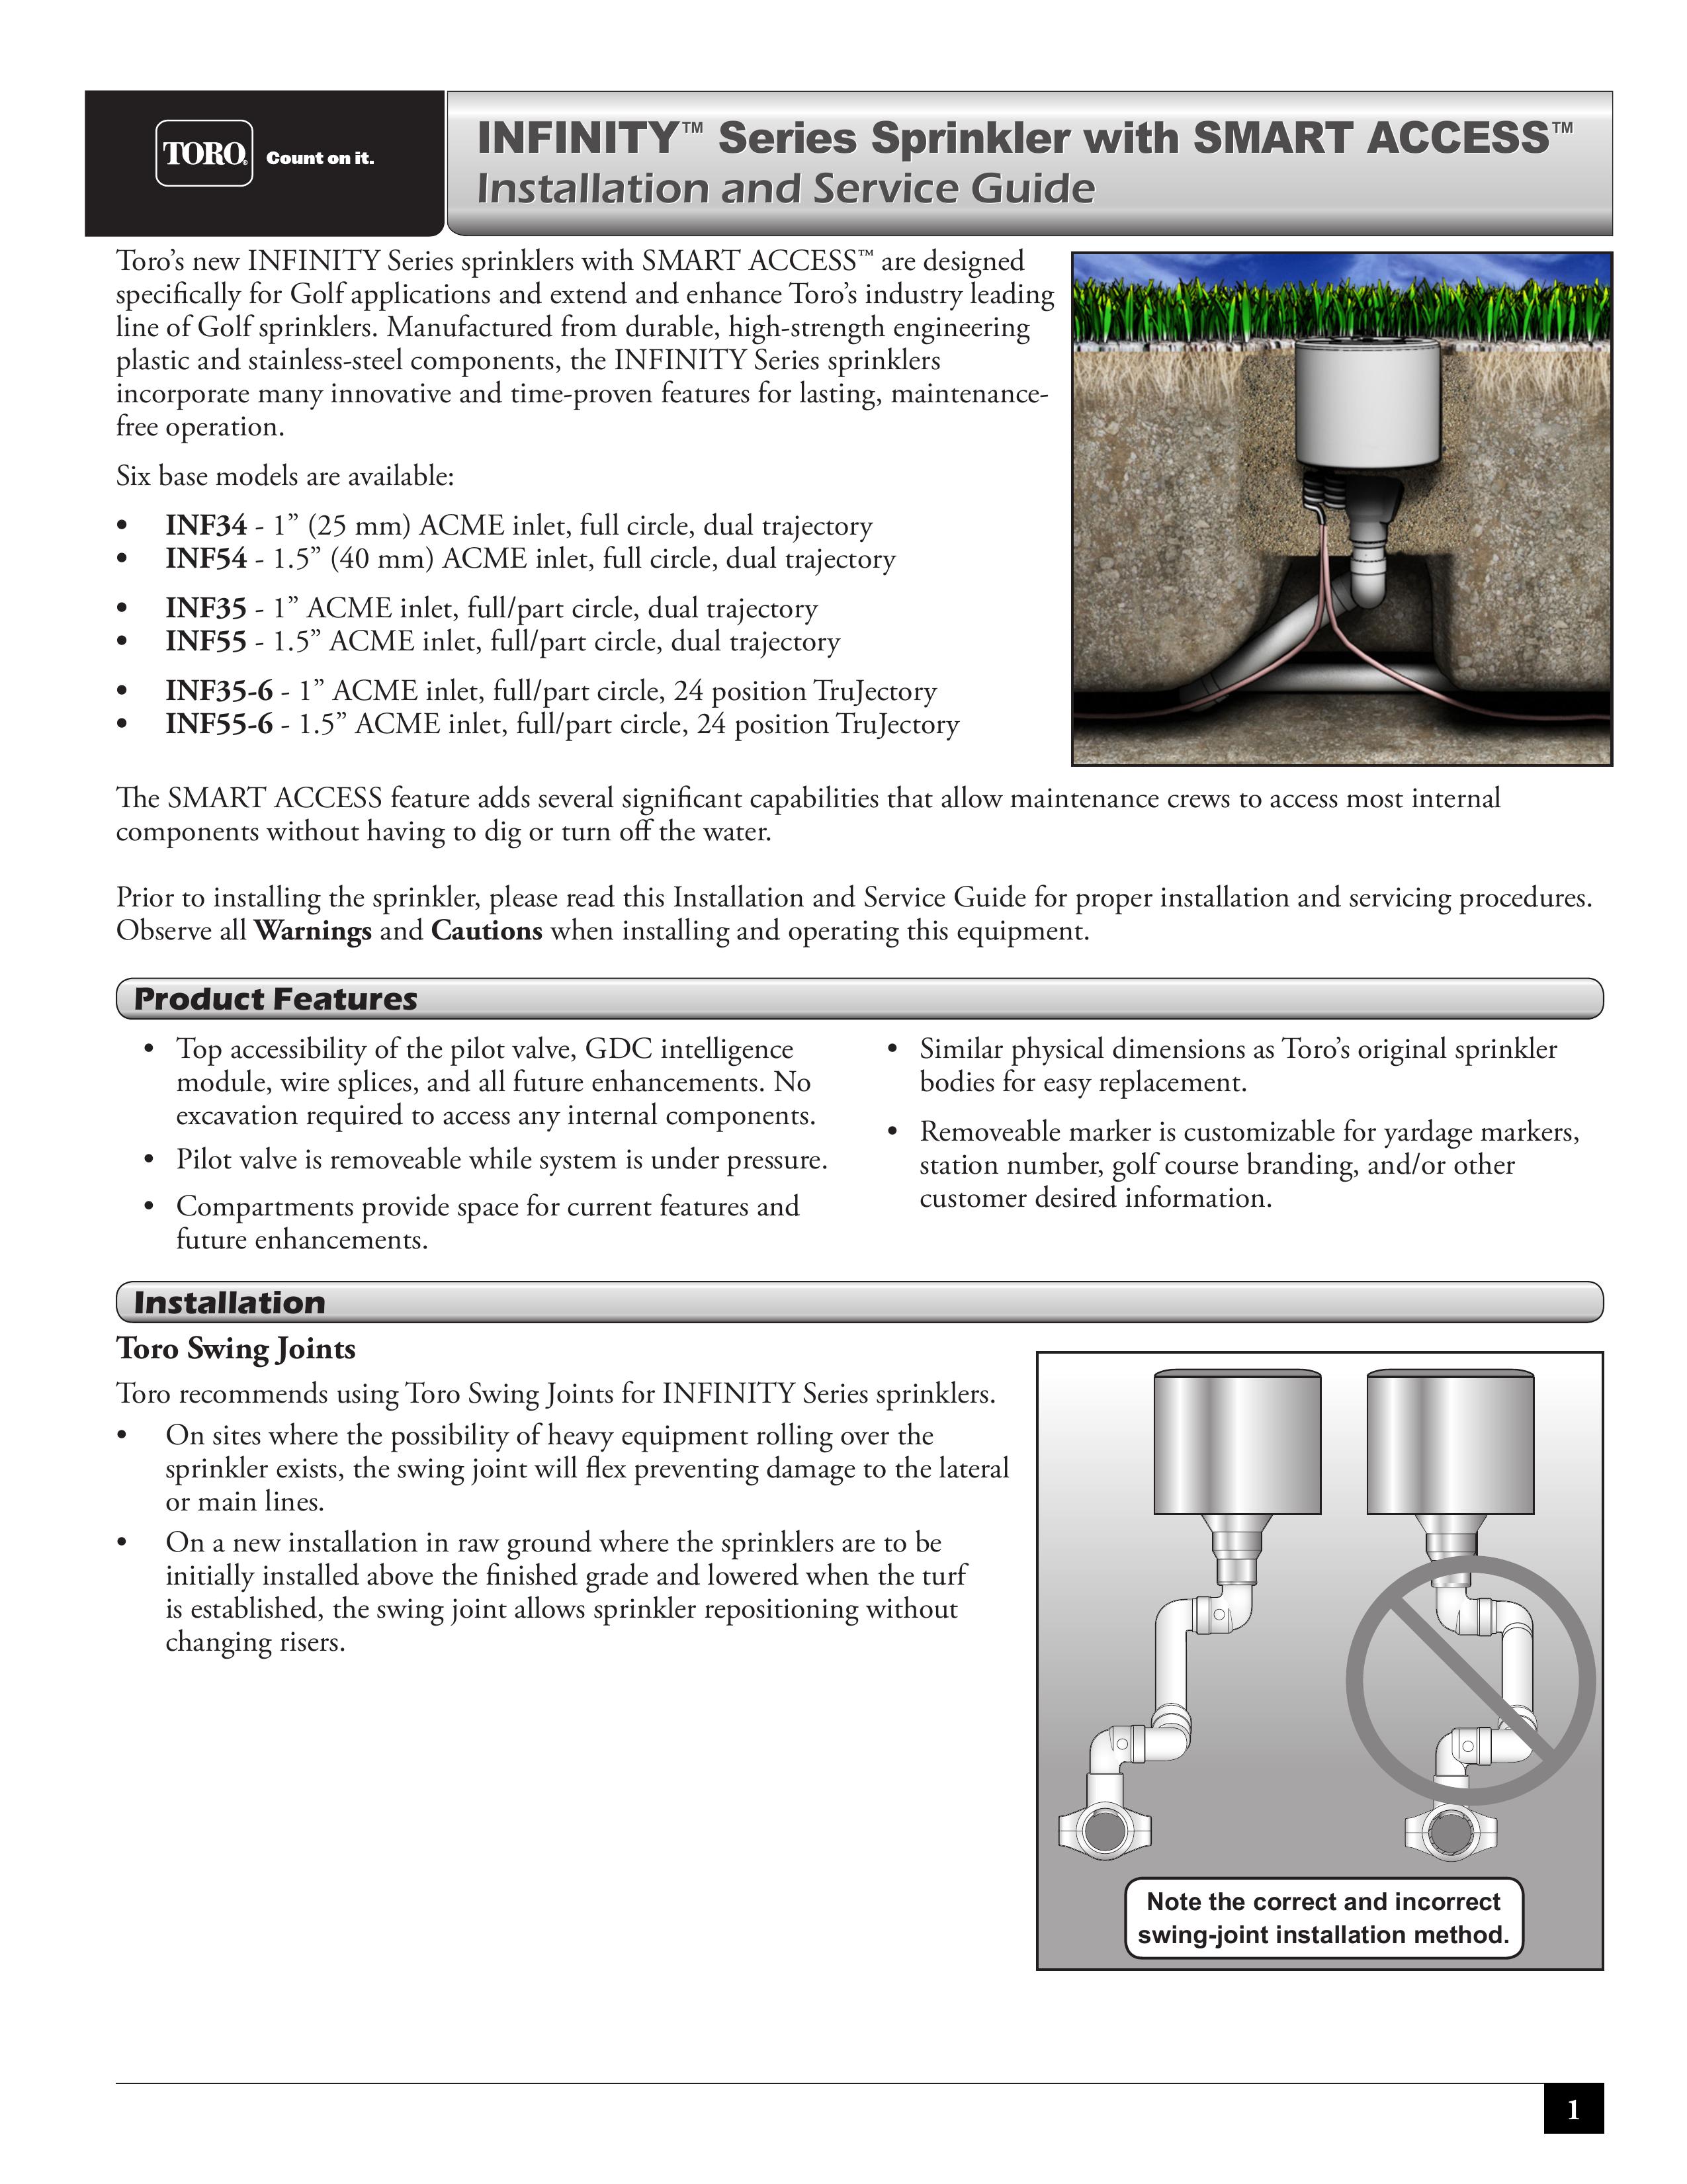 Toro INF34 Sprinkler User Manual